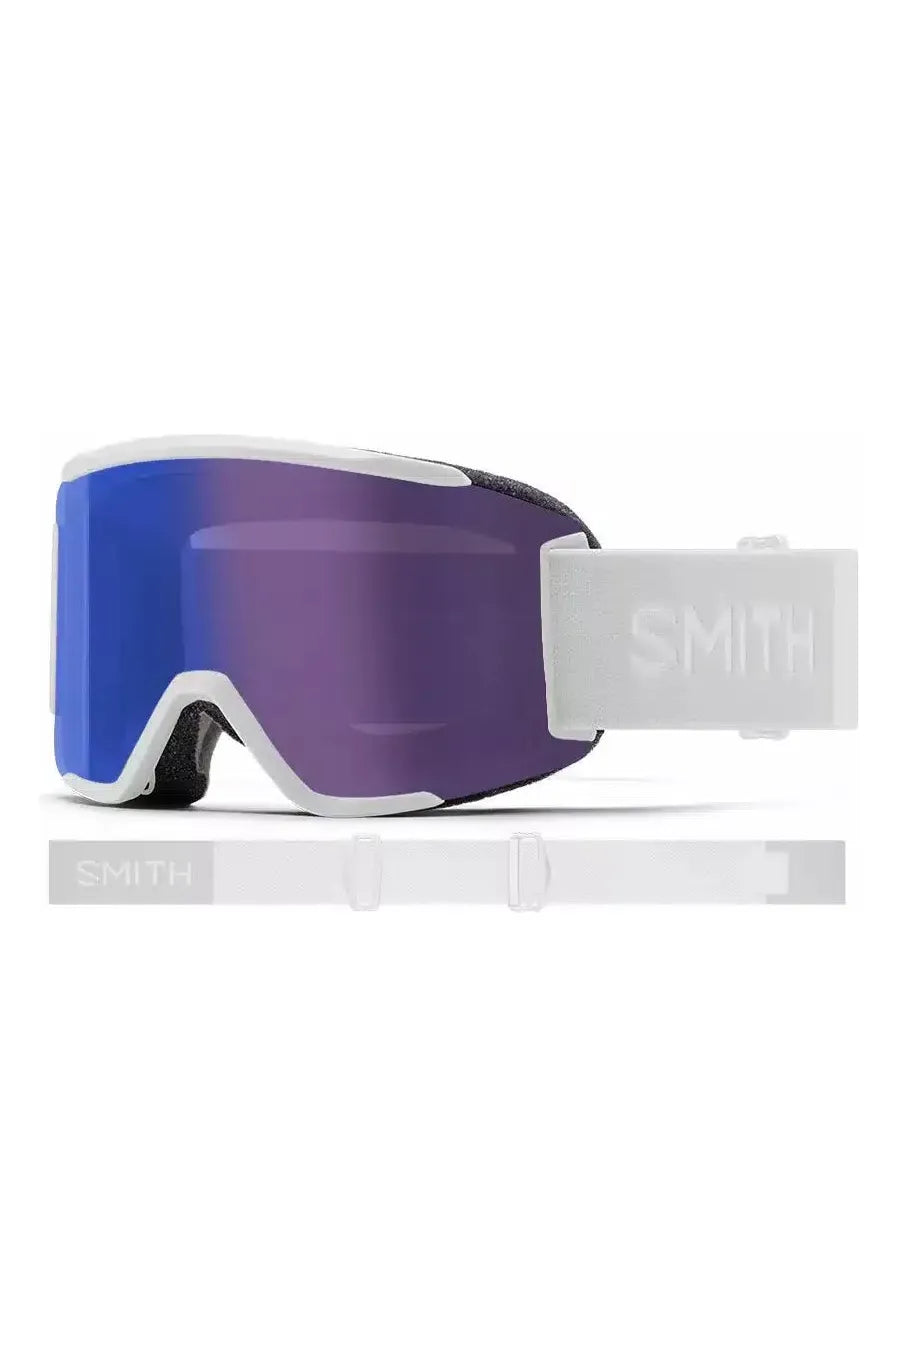 Smith Squad S Goggles White